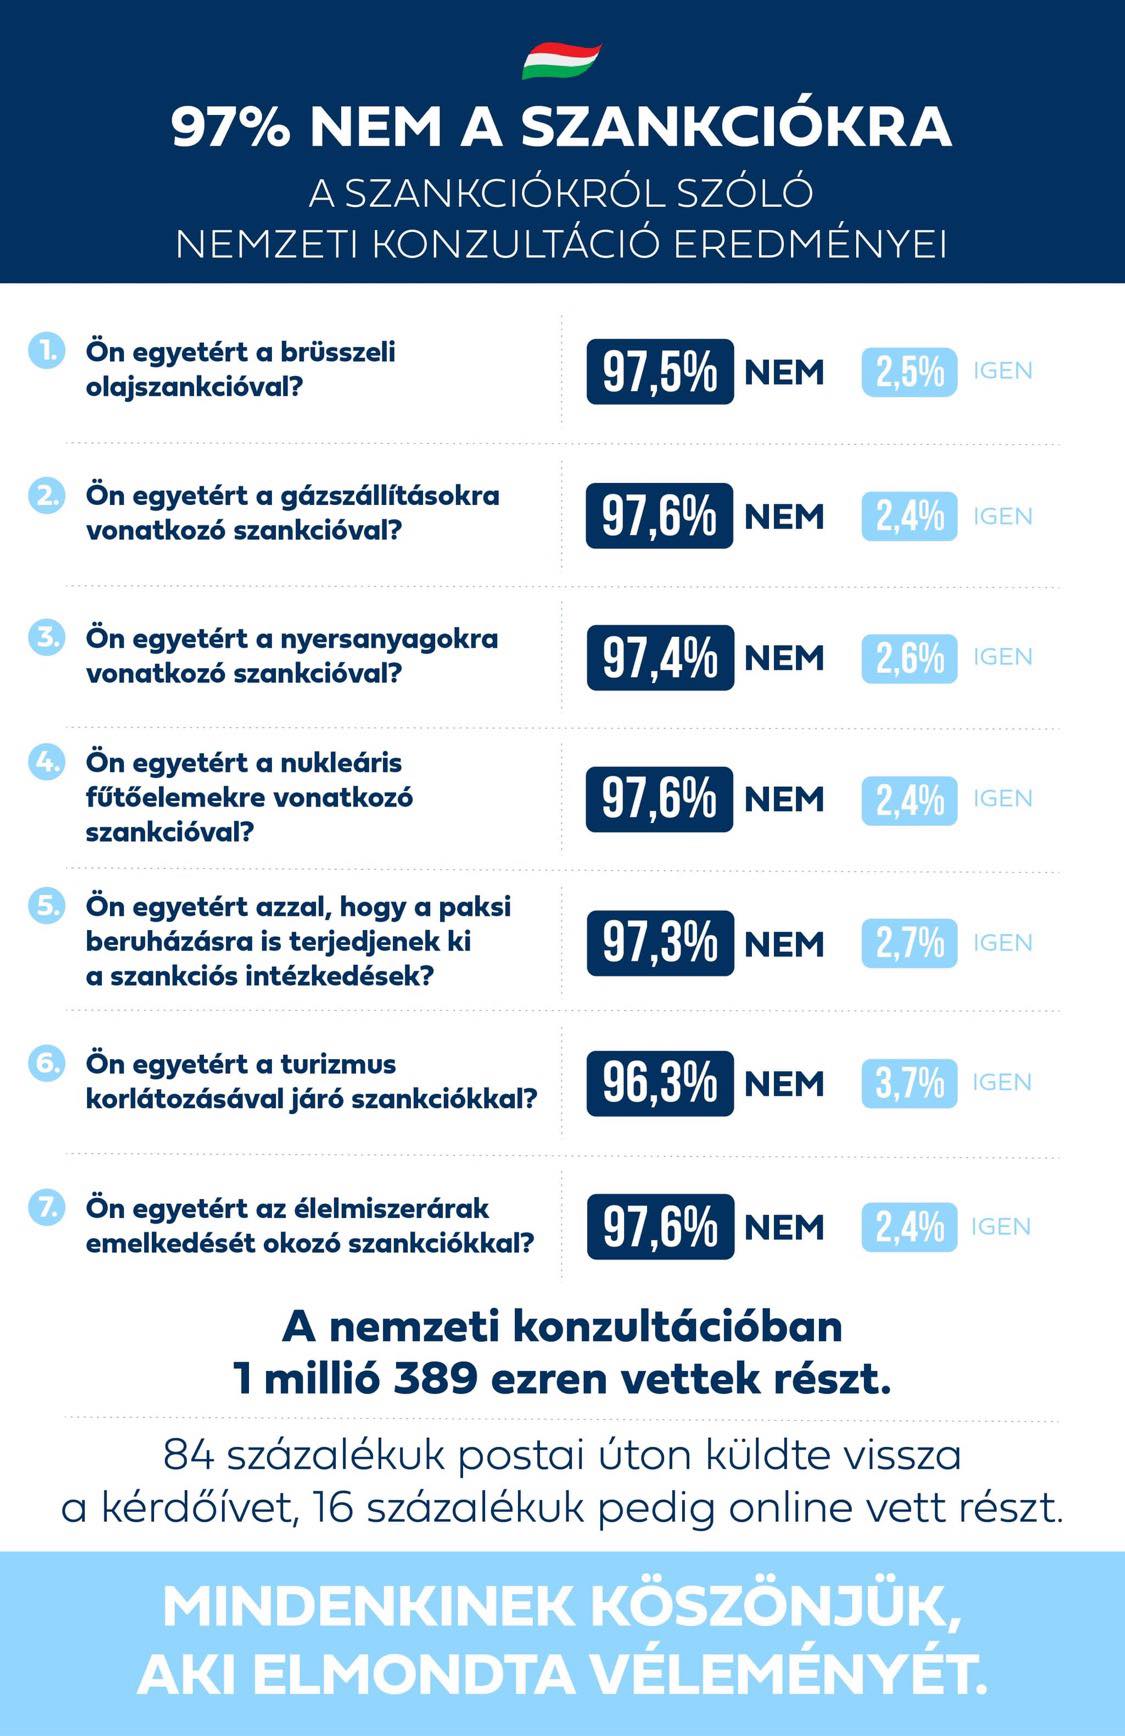 A magyarok 97 százaléka elutasítja a súlyos károkat okozó szankciókat. Ezek a nemzeti konzultáció eredményei: